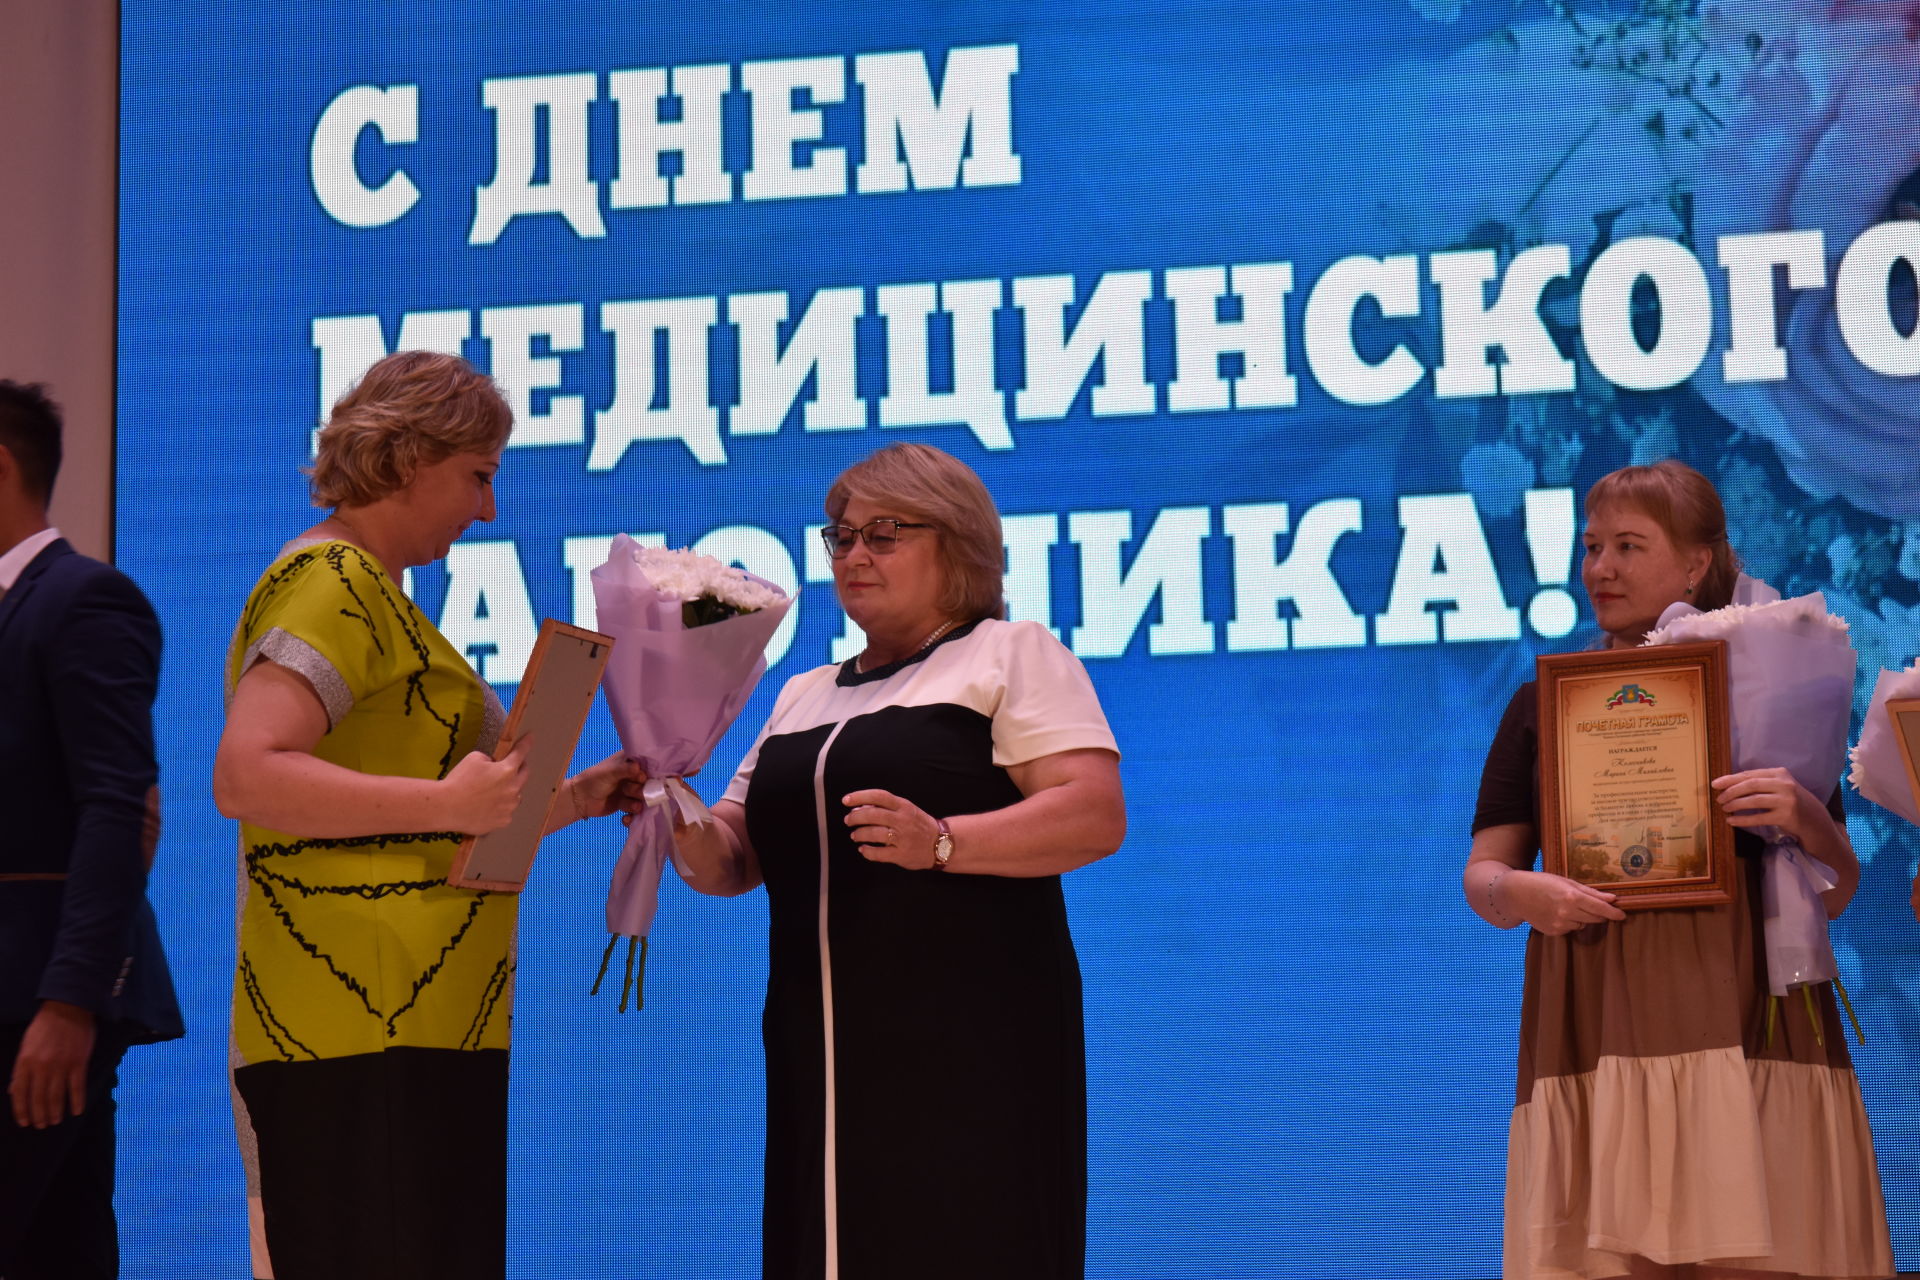 В Камских Полянах прошел праздничный концерт, посвященный Дню медицинского работника